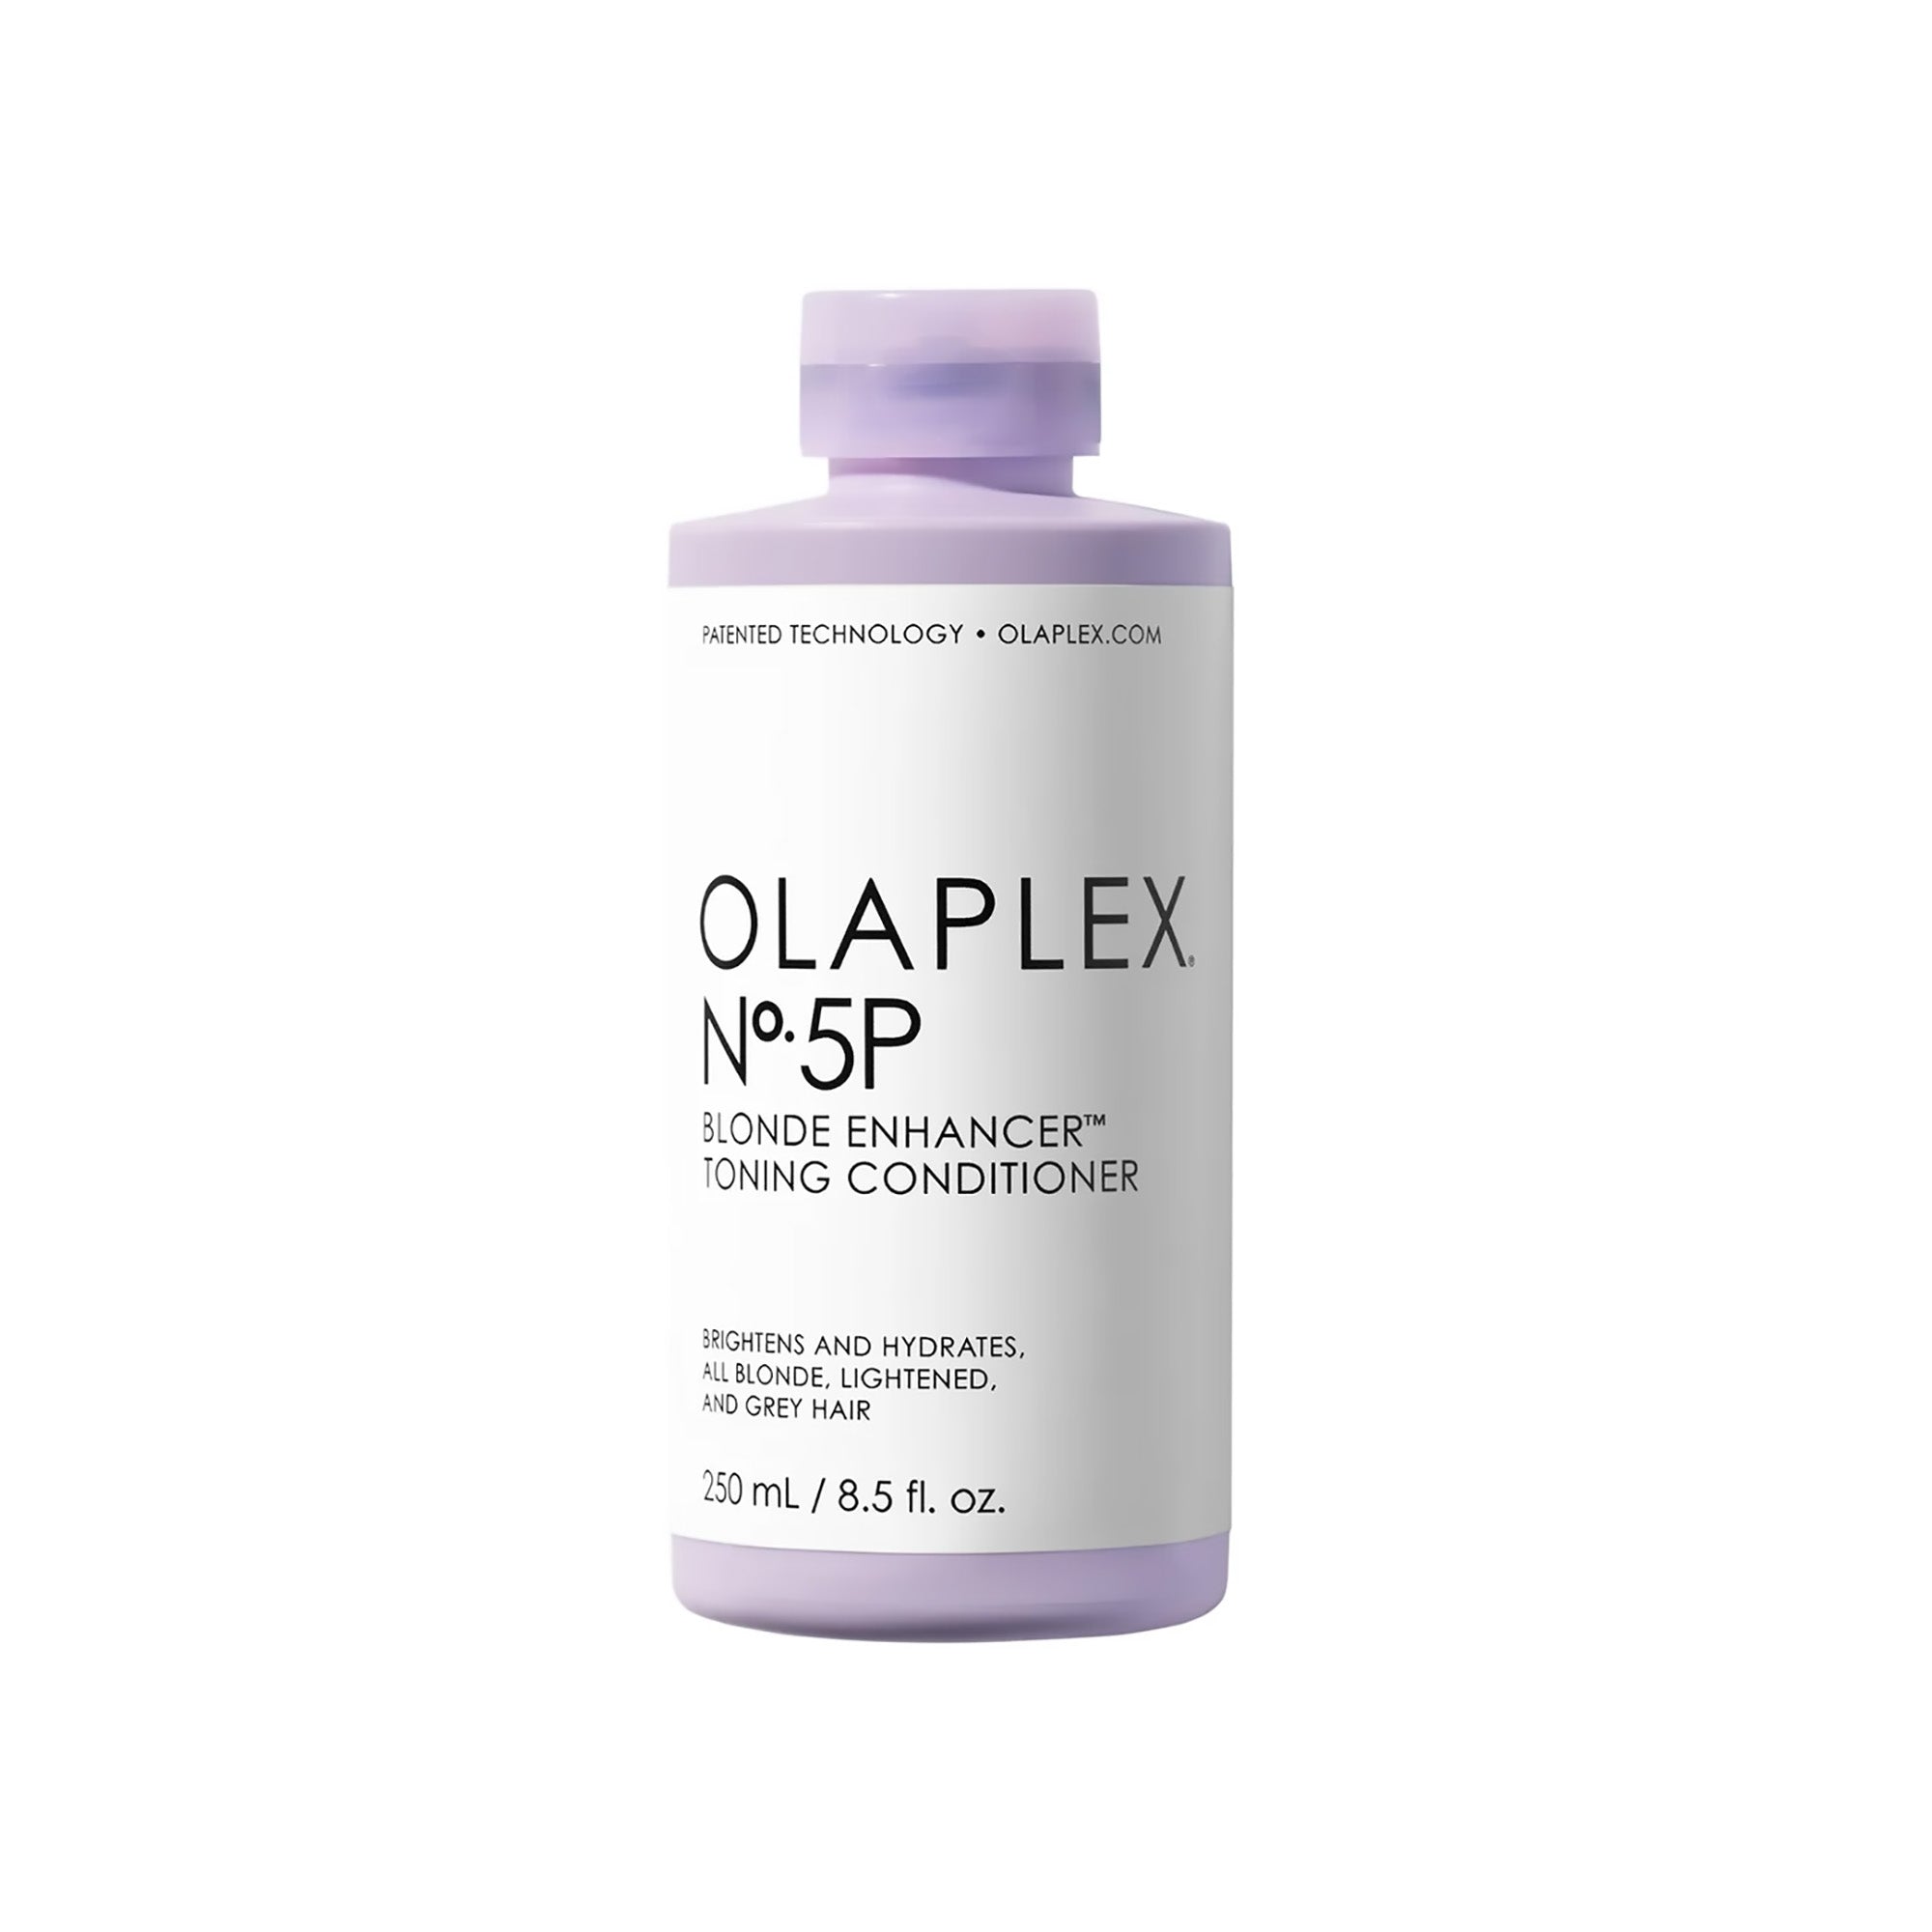 Olaplex No. 5P Blonde Enhancer Toning Conditioner / 8.5 OZ